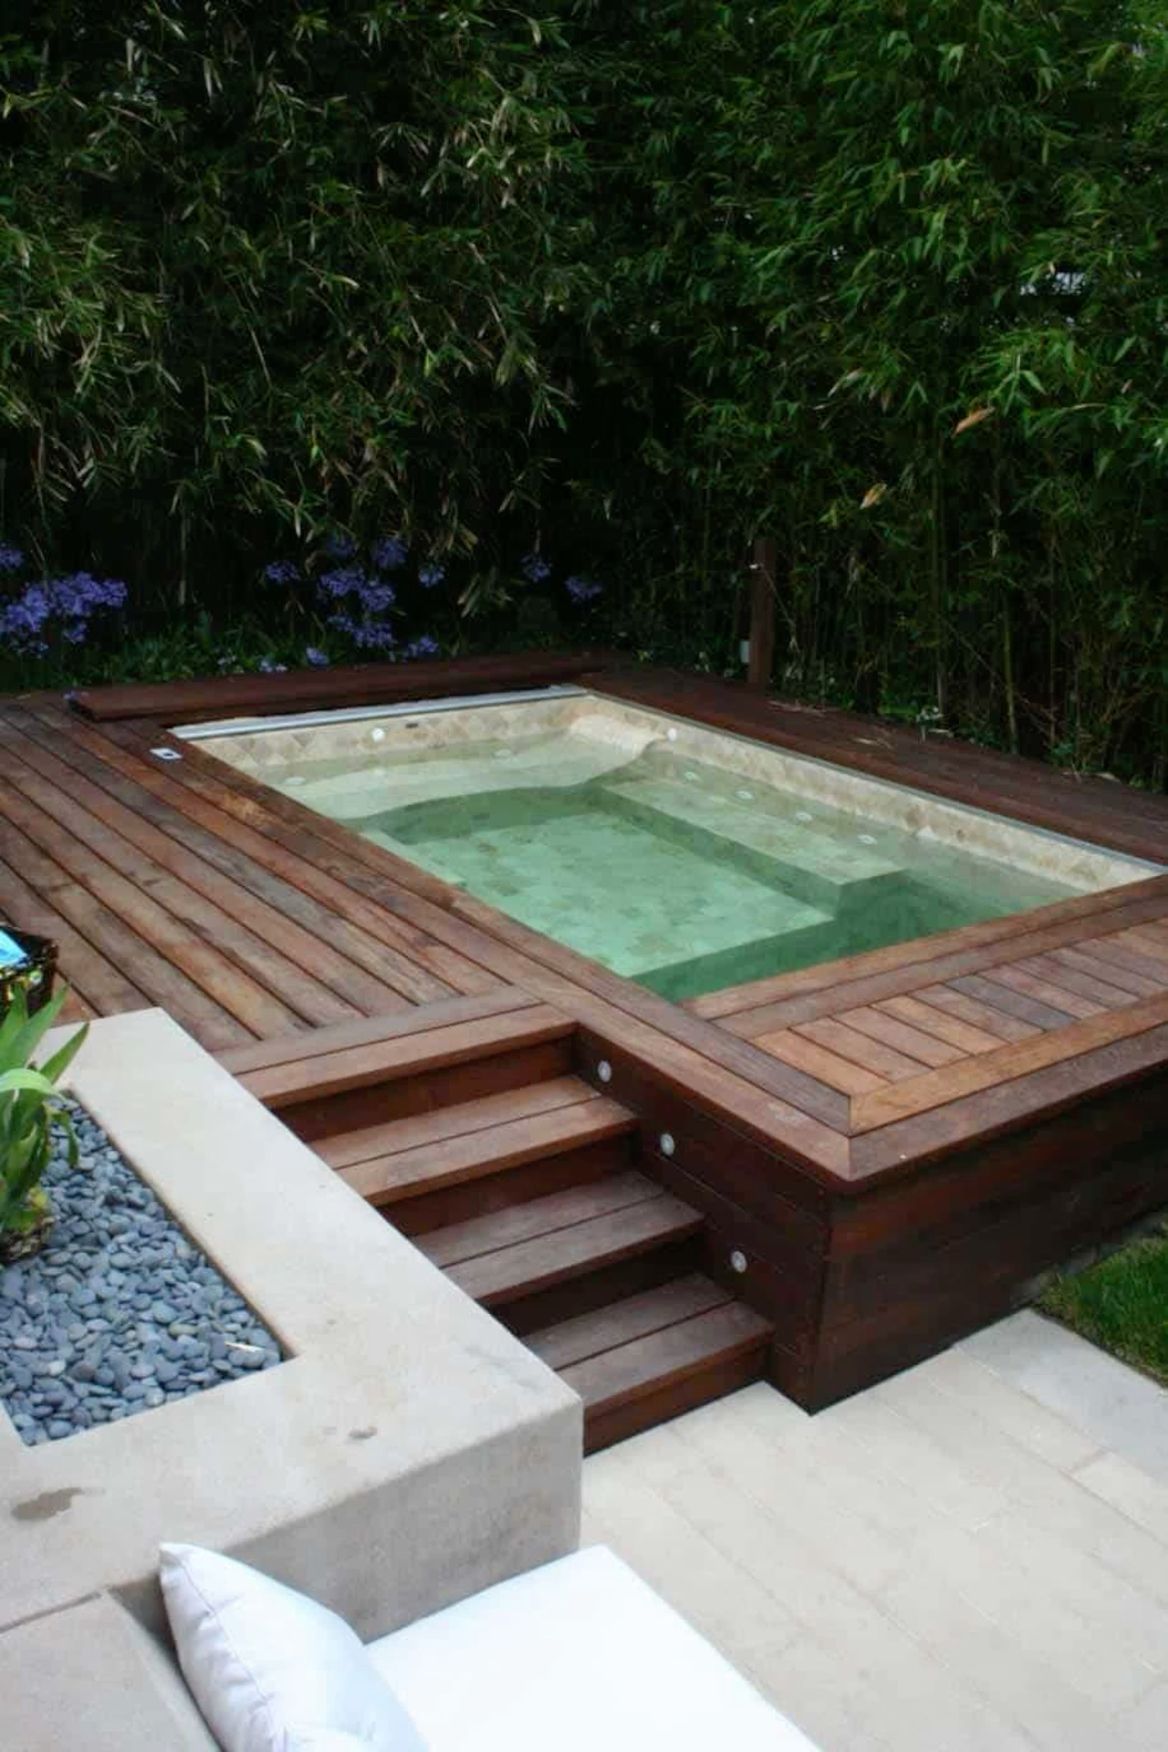 Creative Small Garden Hot Tub Ideas for Your Outdoor Oasis